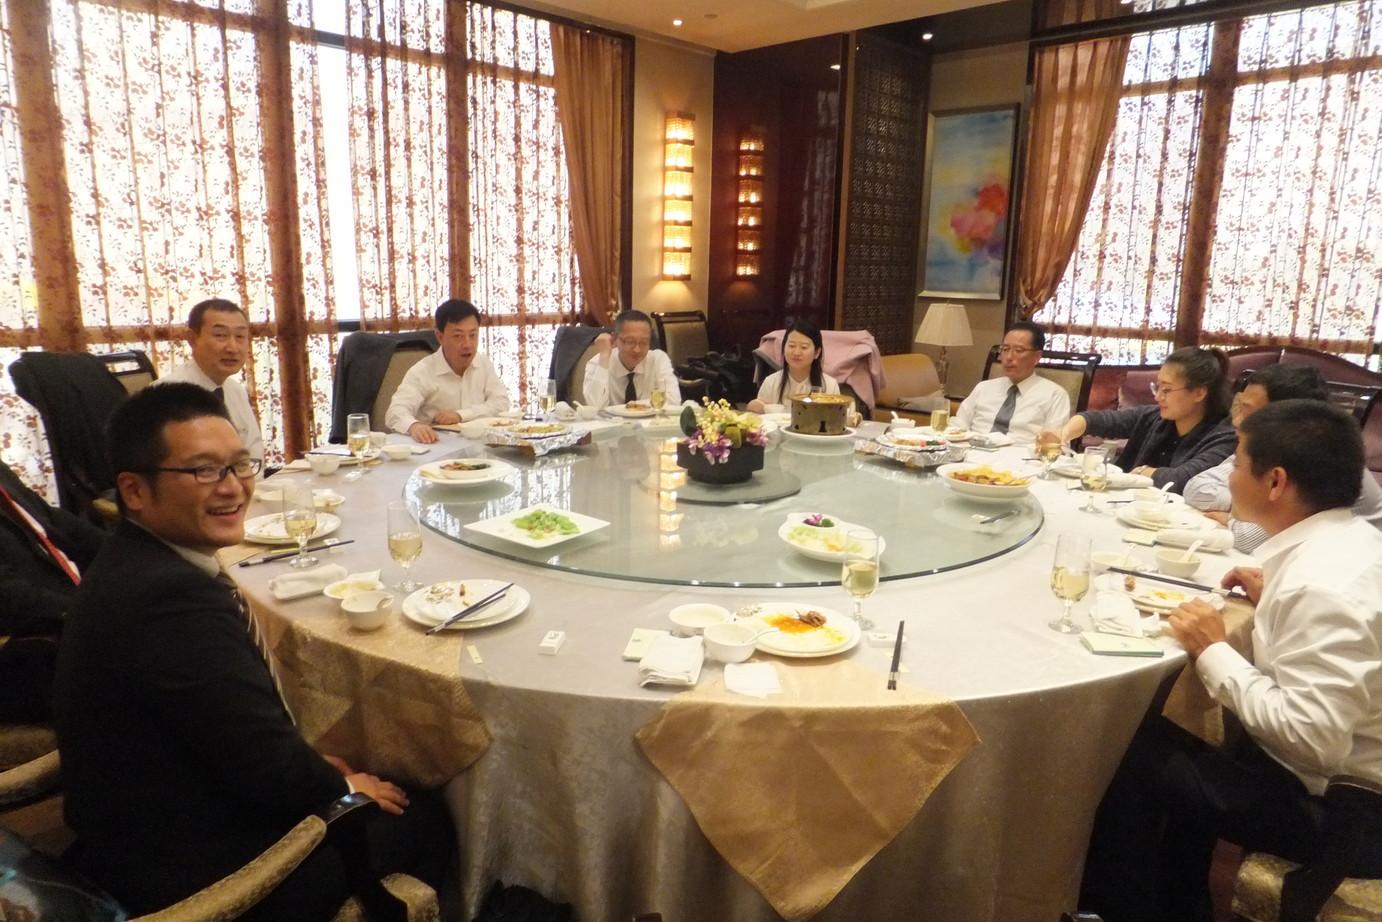 大平副市長を団長とする6名と蘭州市人民政府の人たちが一つ大きいのテーブルに座っている写真